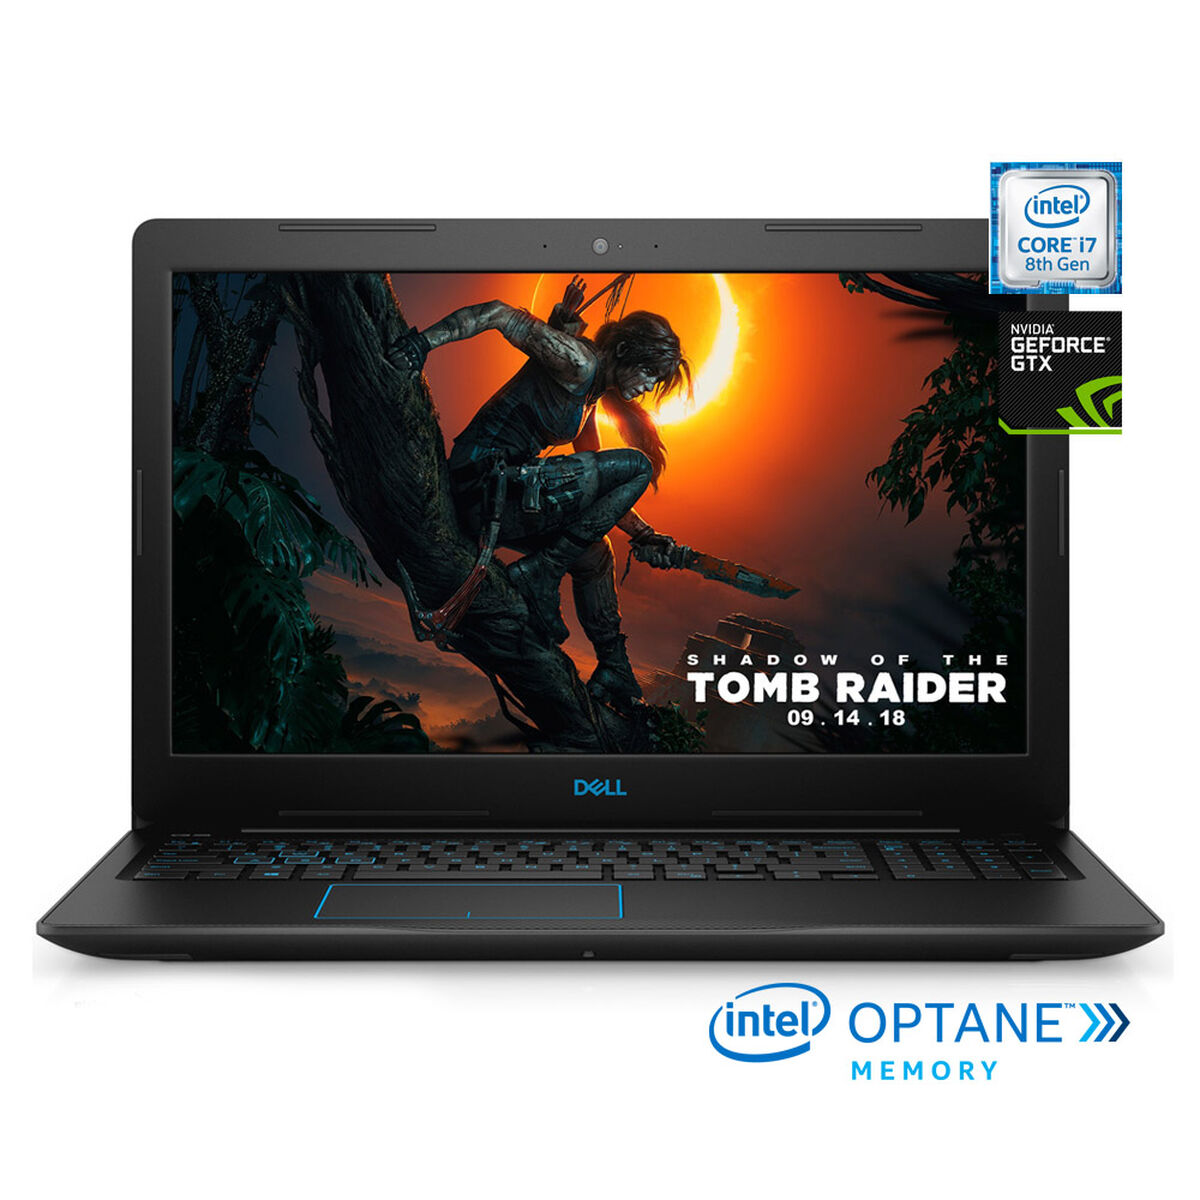 Notebook Gamer Dell 3579-7283 Core i7- 8750H 8GB 1TB 15.6" NVIDIA GTX1050Ti + 16GB Optane